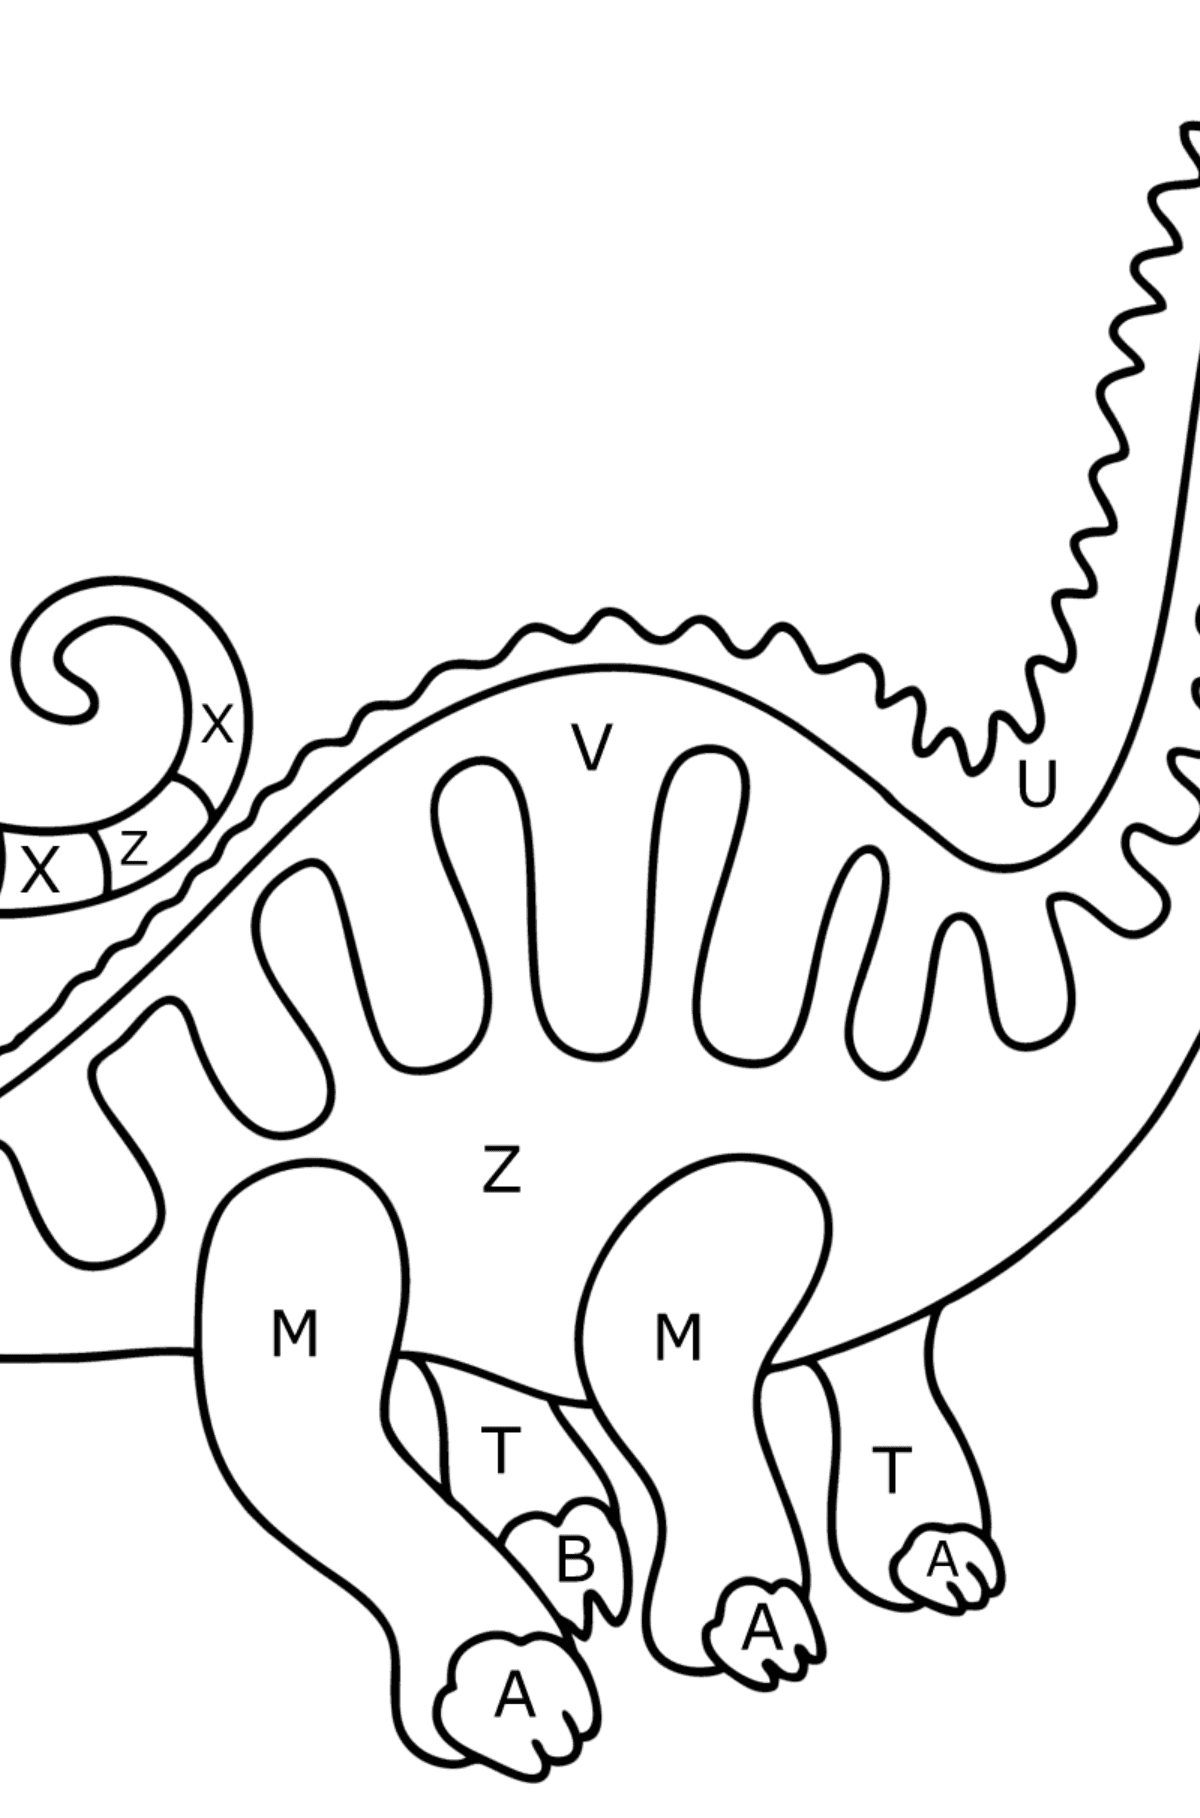 Dibujo de Apatosaurio para colorear - Colorear por Letras para Niños